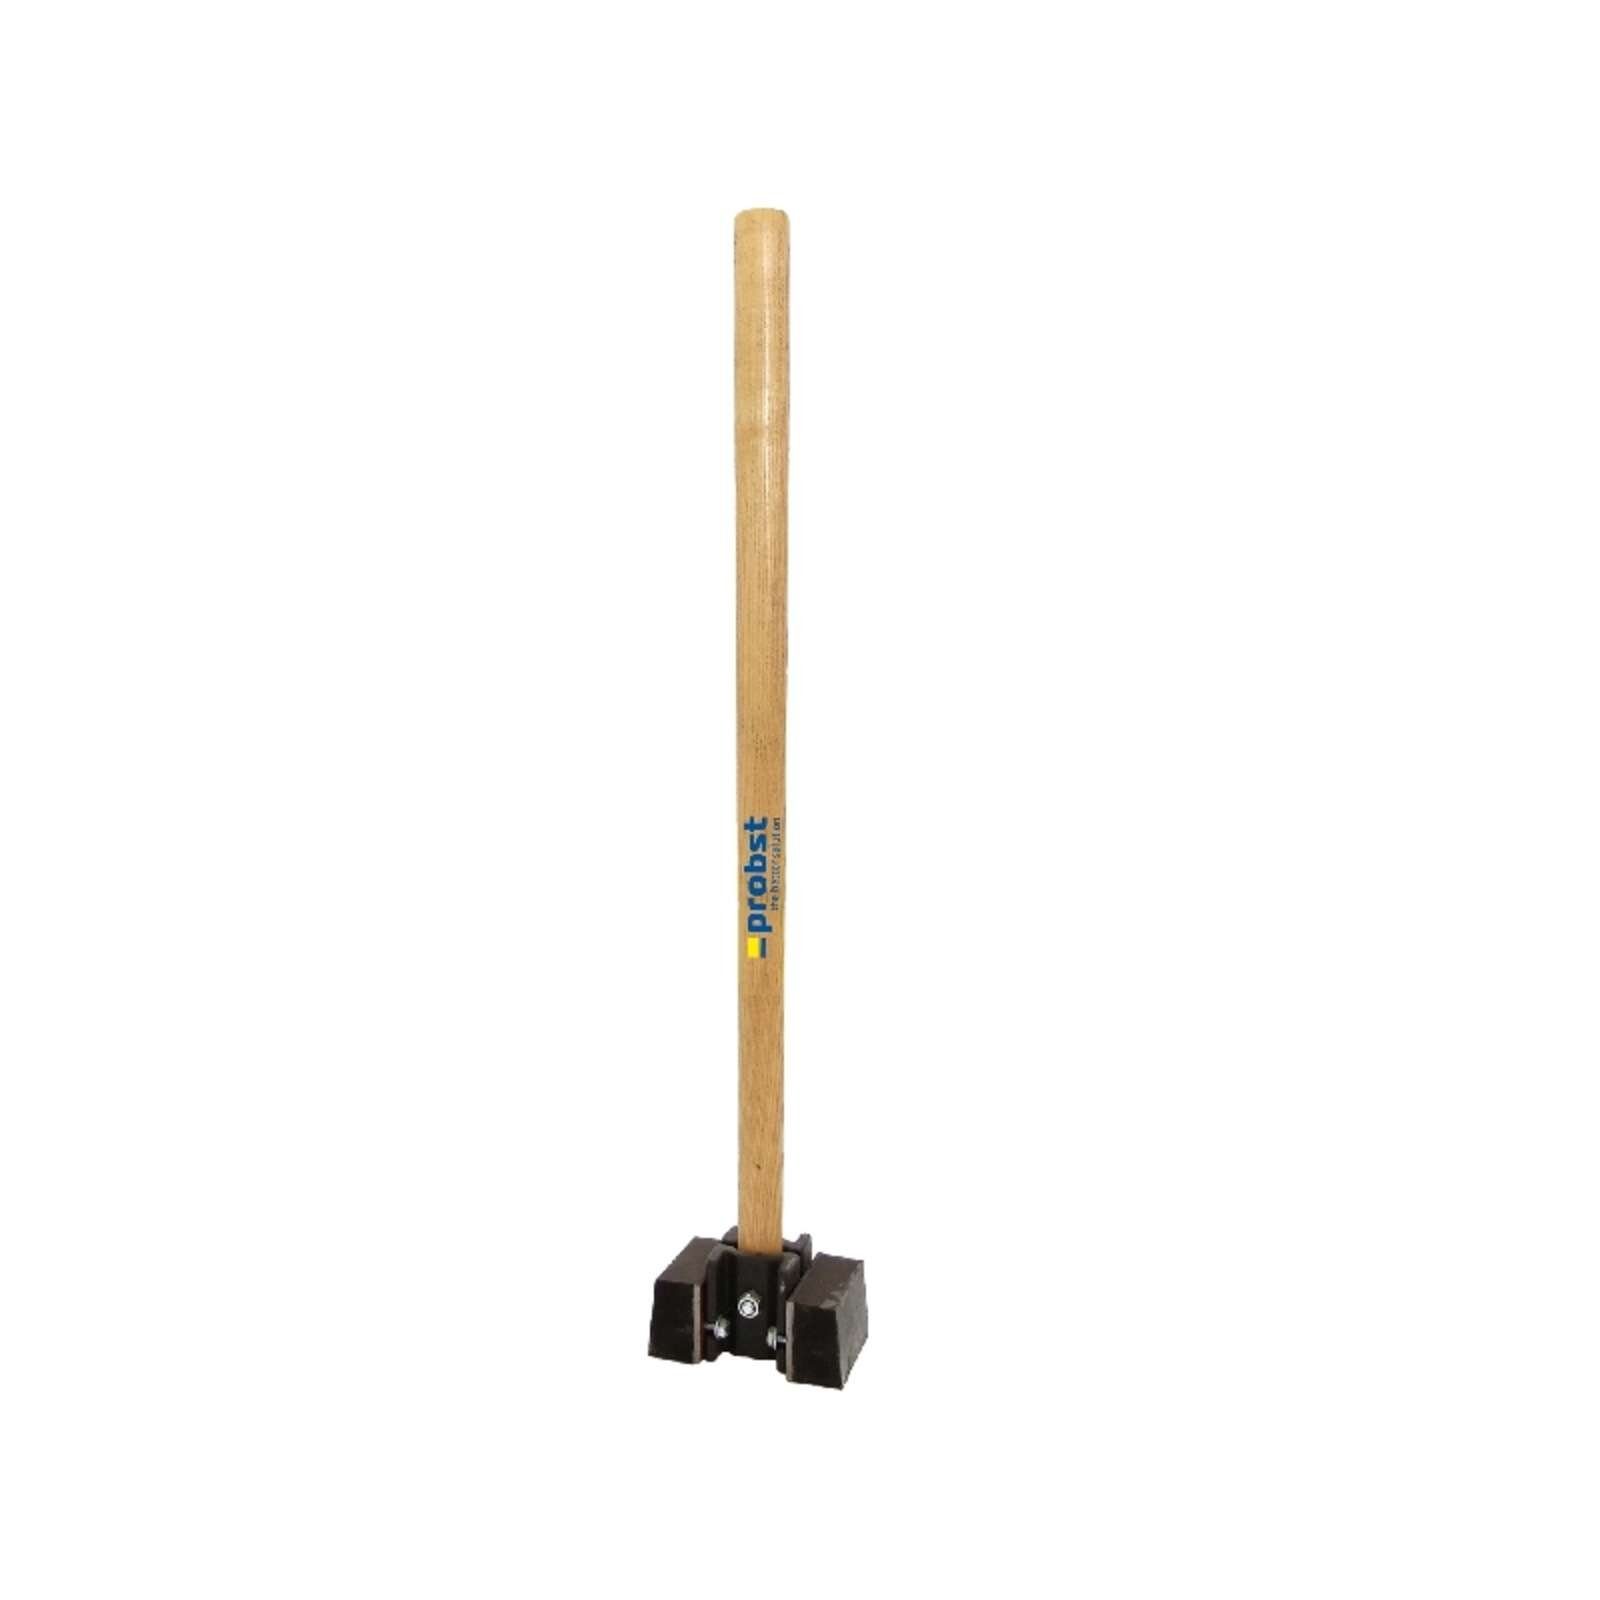 800mm Gummi-Hammer HaWe Plattenlegerhammer, Schonhammer, Hammer HaWe 2,2kg, 230.80